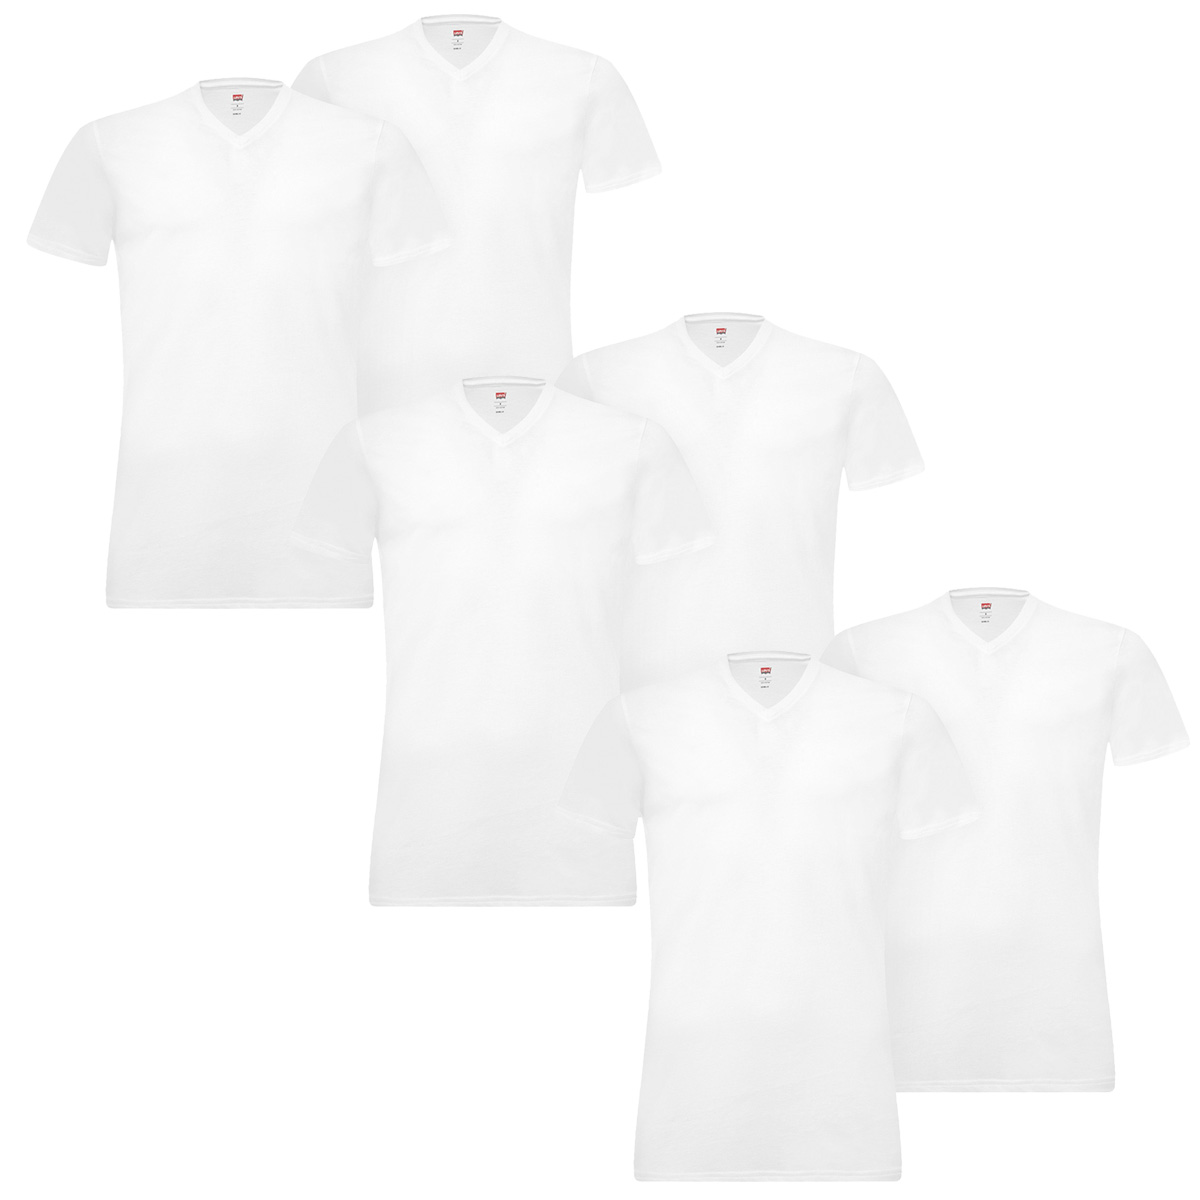 6 er Pack Levis 200SF V-Neck T-Shirt Men Herren Unterhemd V-Ausschnitt